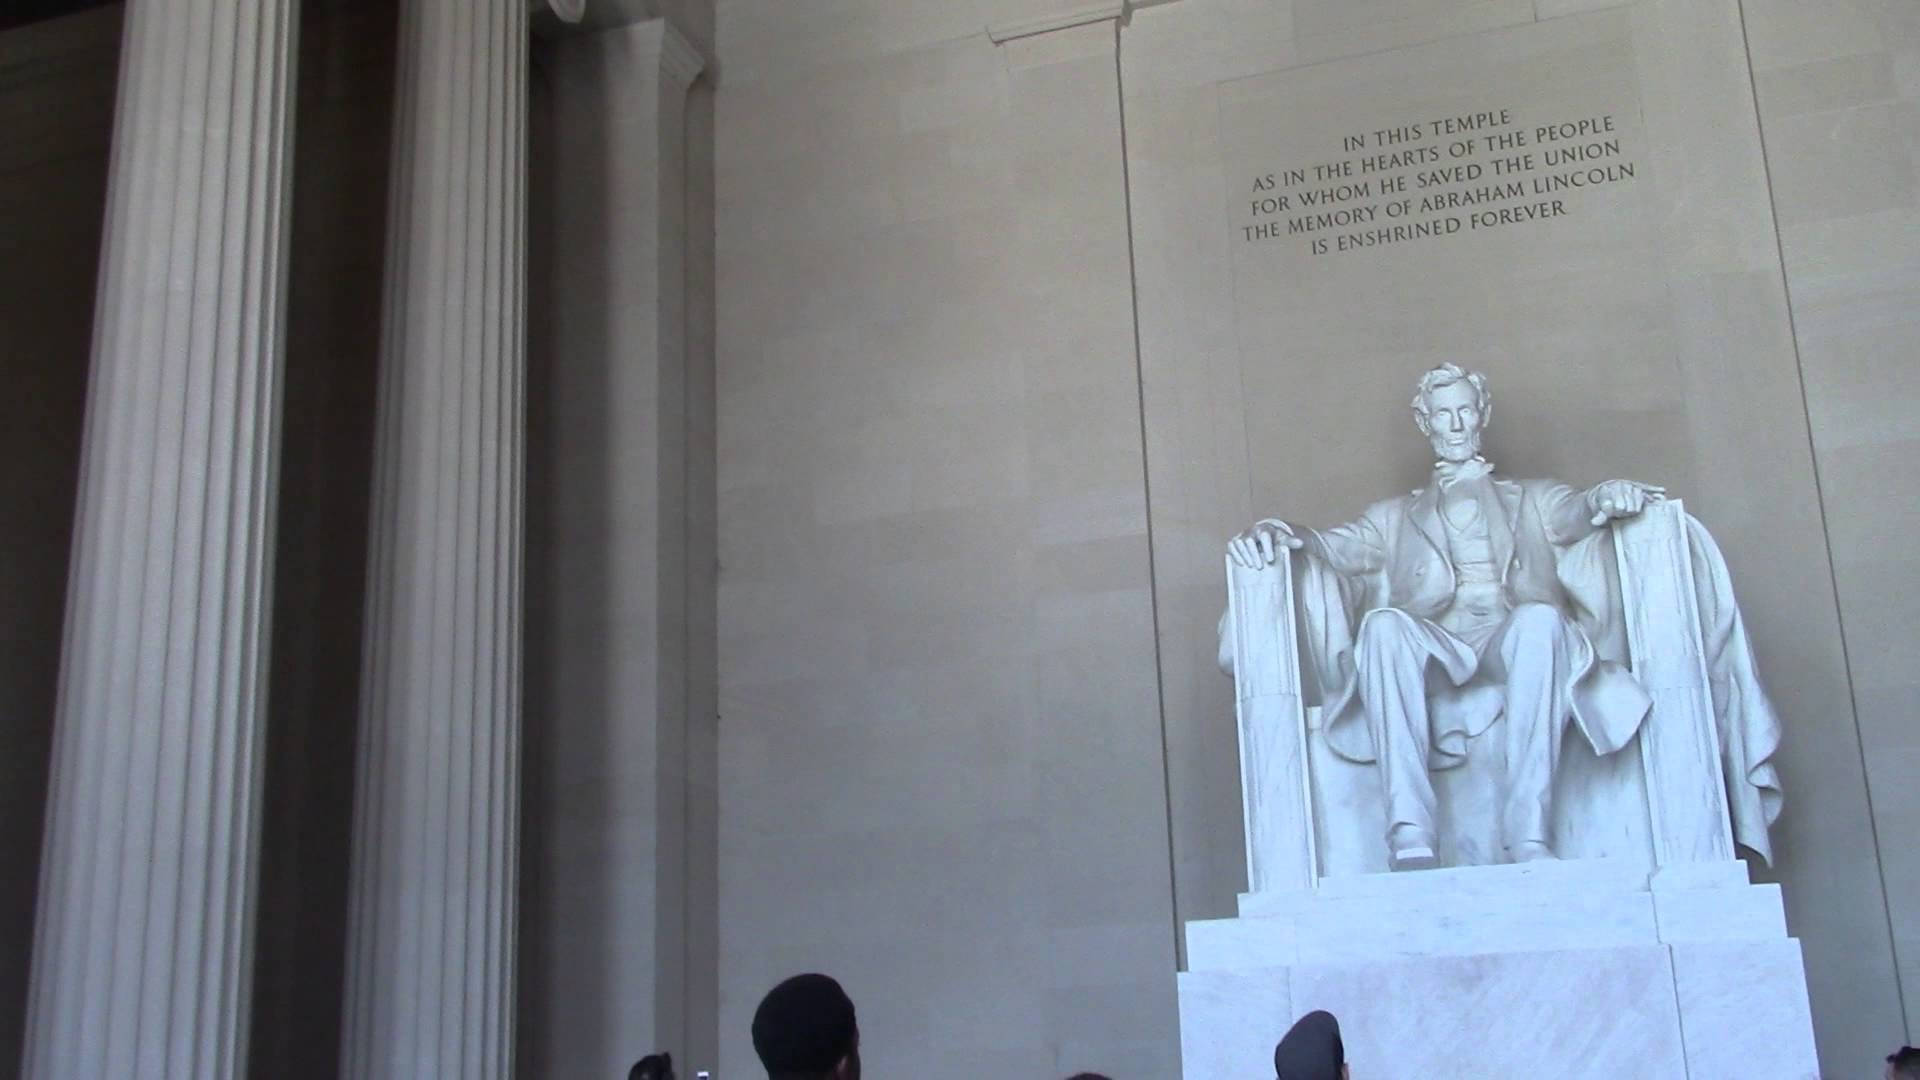 Visitantesse Reúnem Em Torno Do Monumento De Lincoln. Papel de Parede